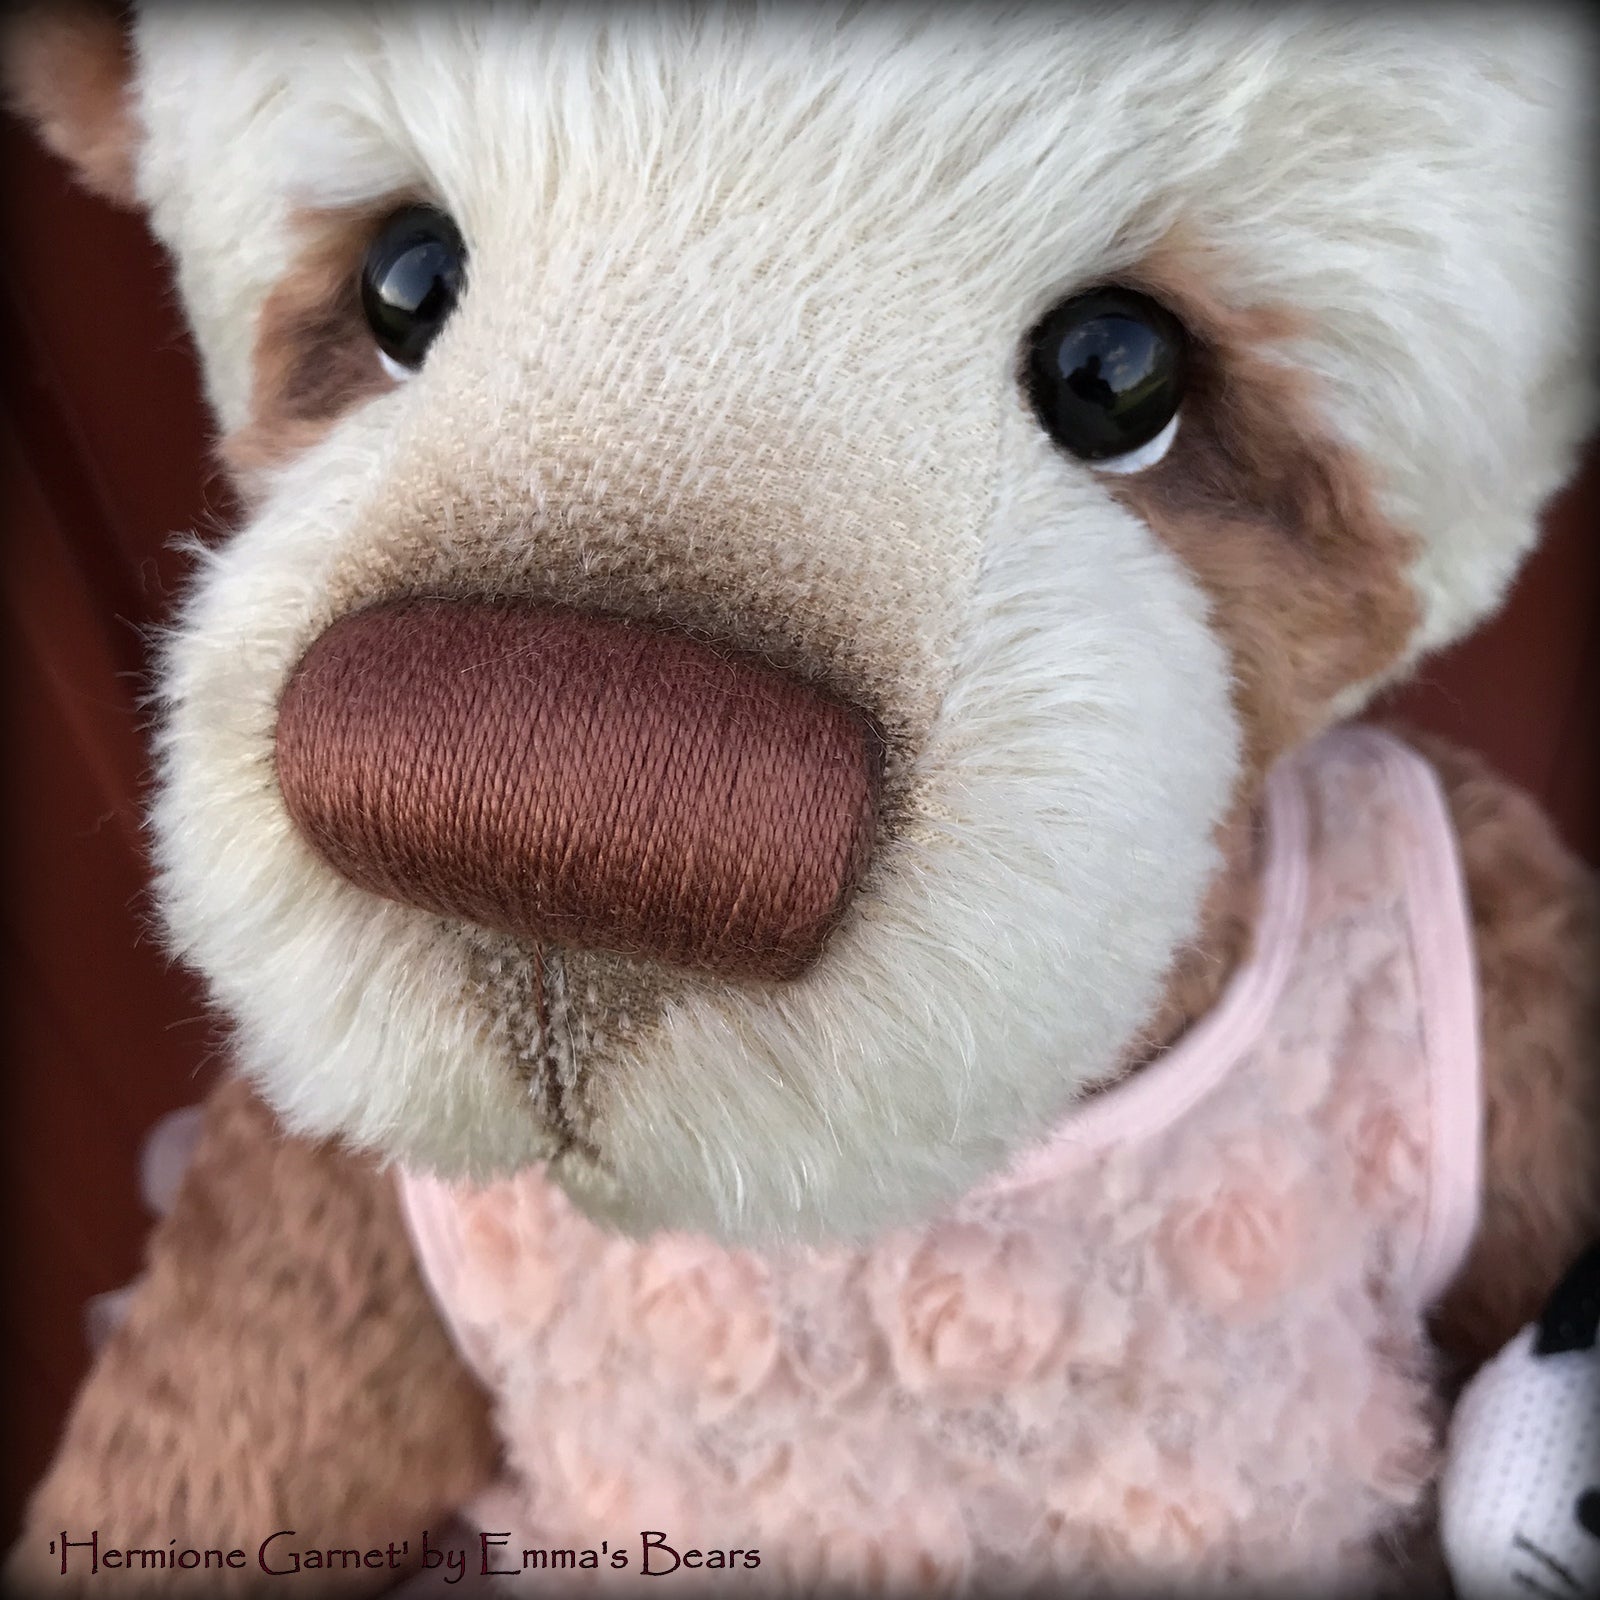 Hermione Garnet - 28" Mohair Artist Bear by Emmas Bears - OOAK